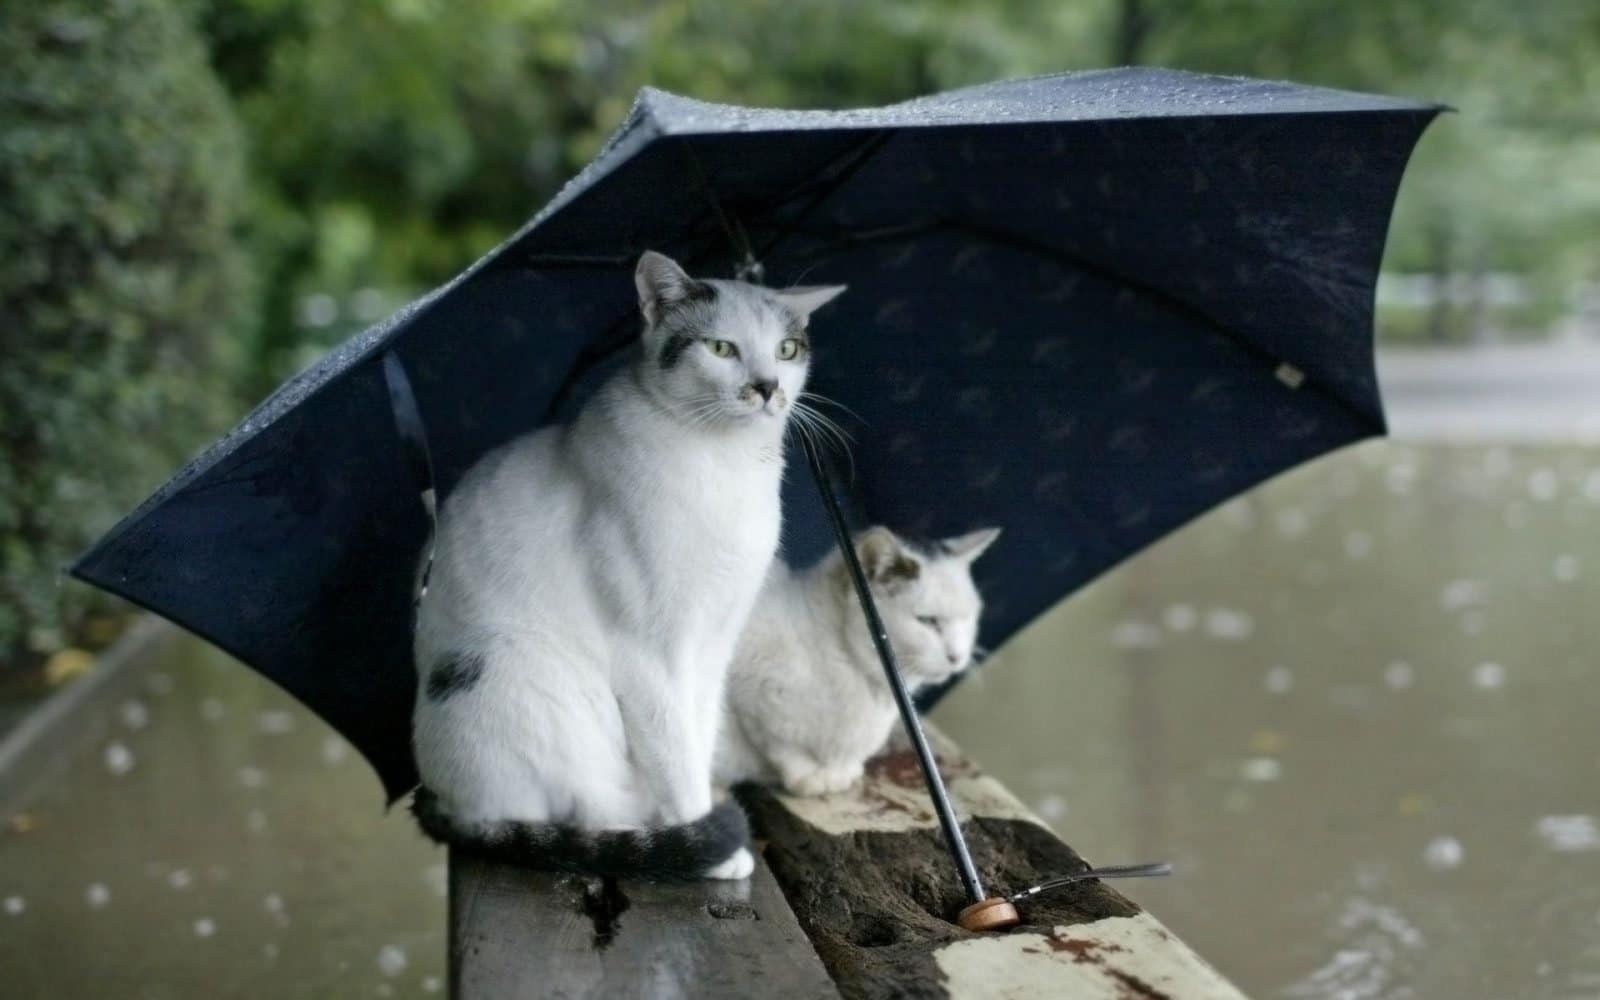 Cats under Umbrella